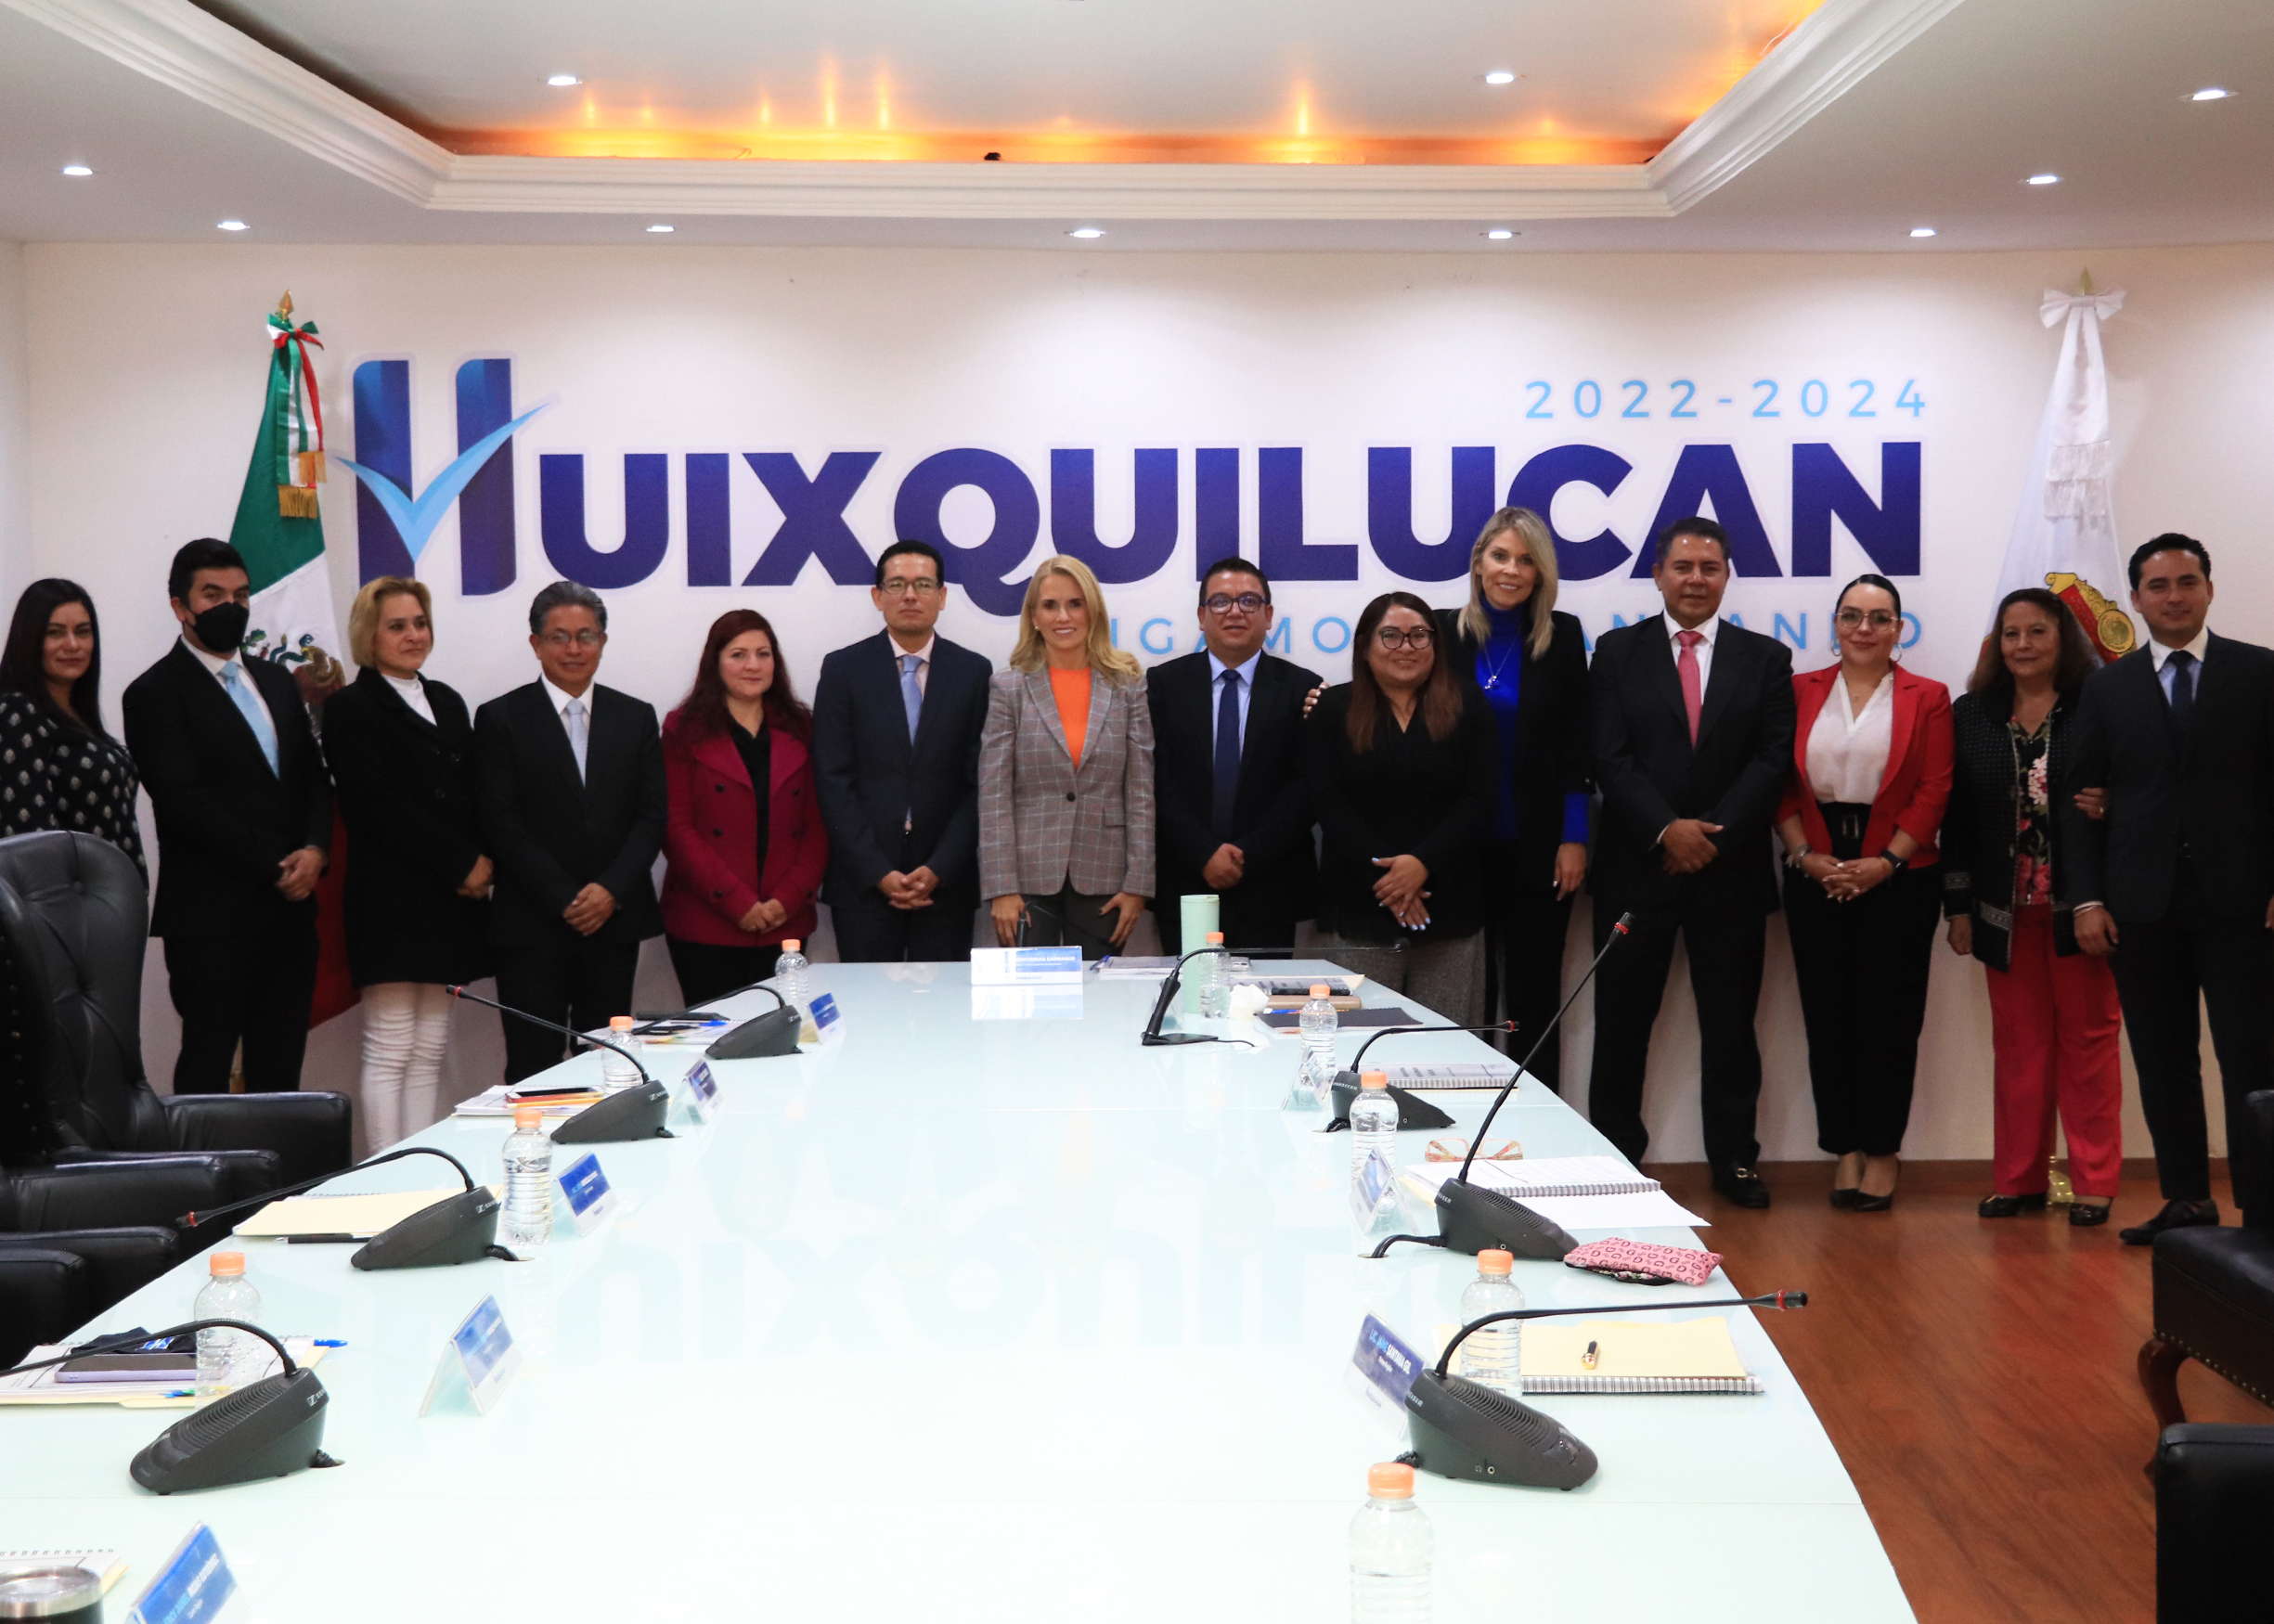 Cambio de funcionarios aprobados por cabildo de Huixquilucan